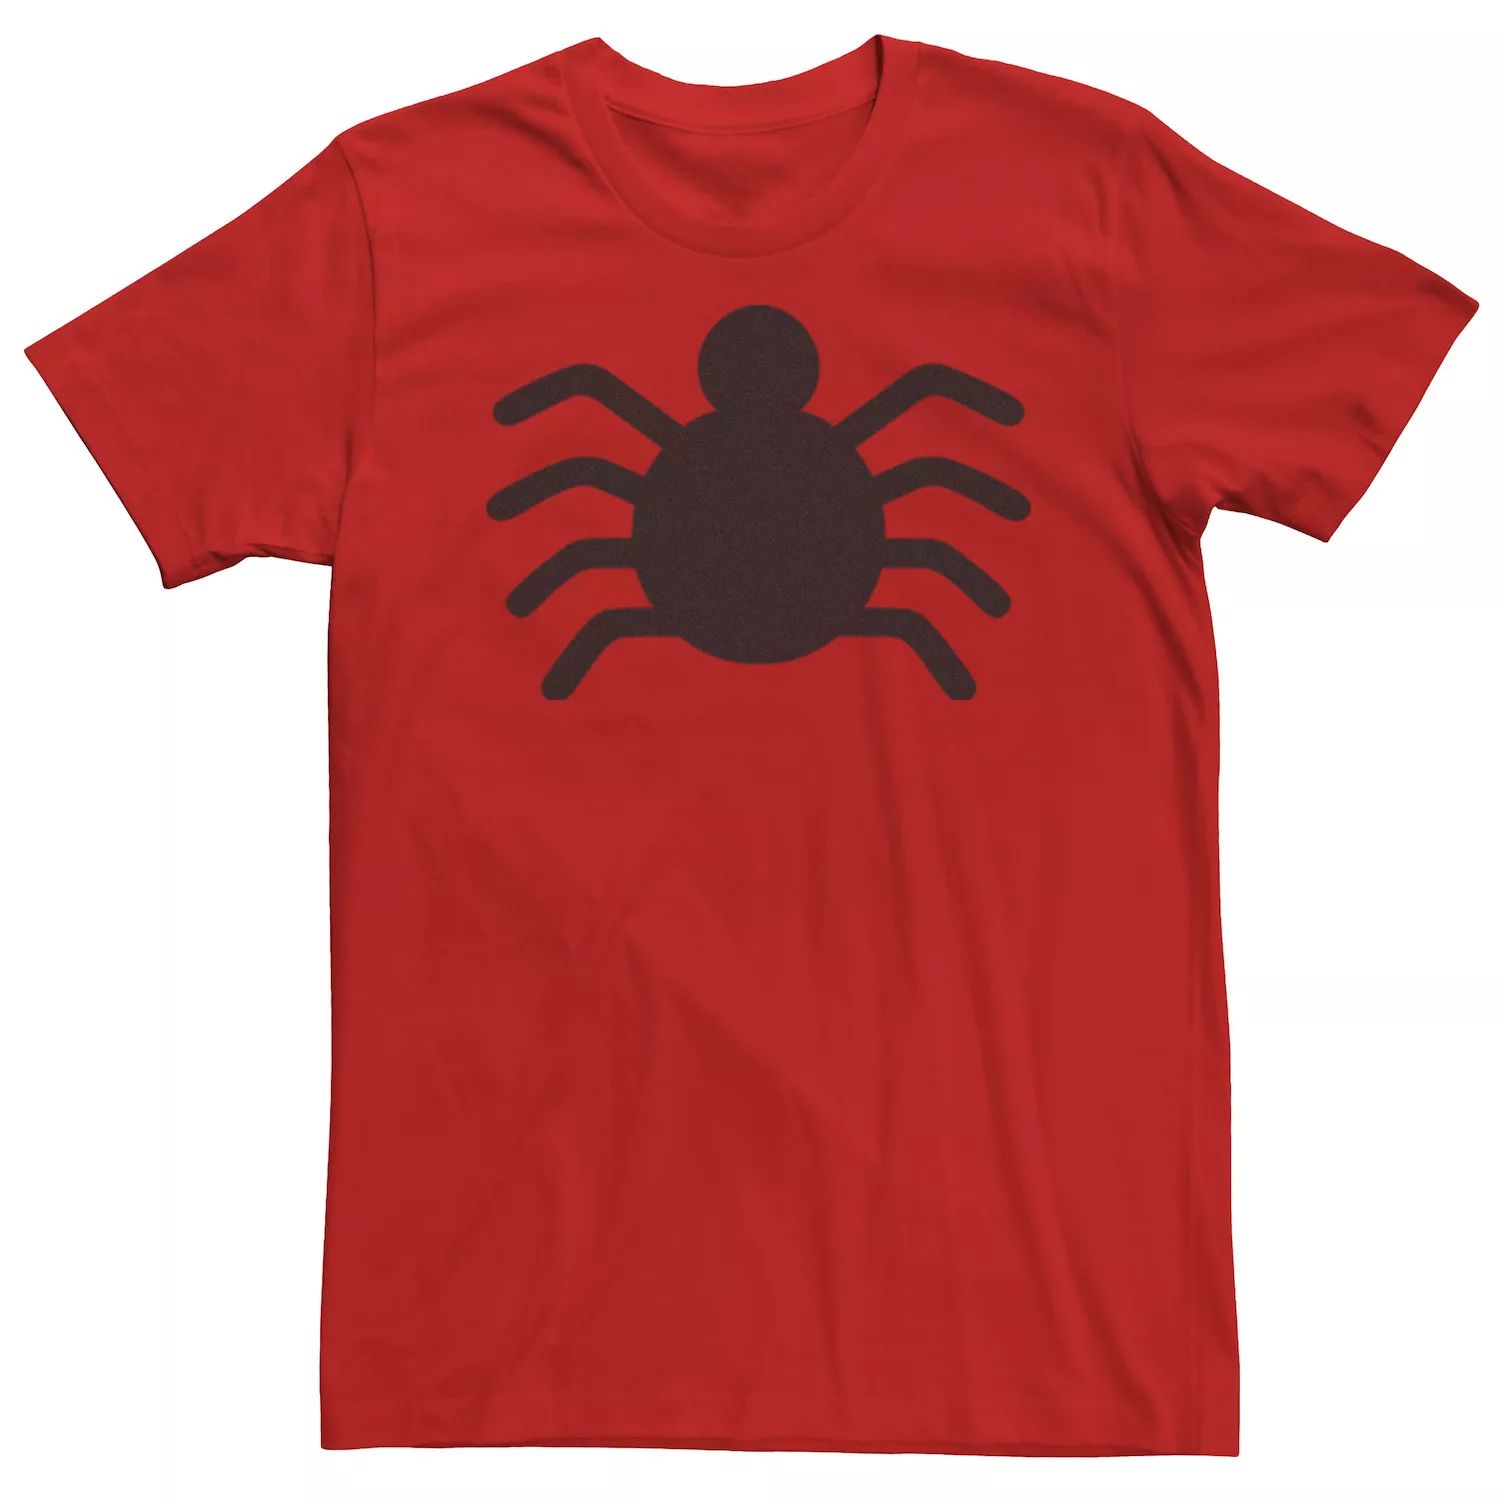 Мужская футболка с оригинальным логотипом «Человек-паук» Marvel